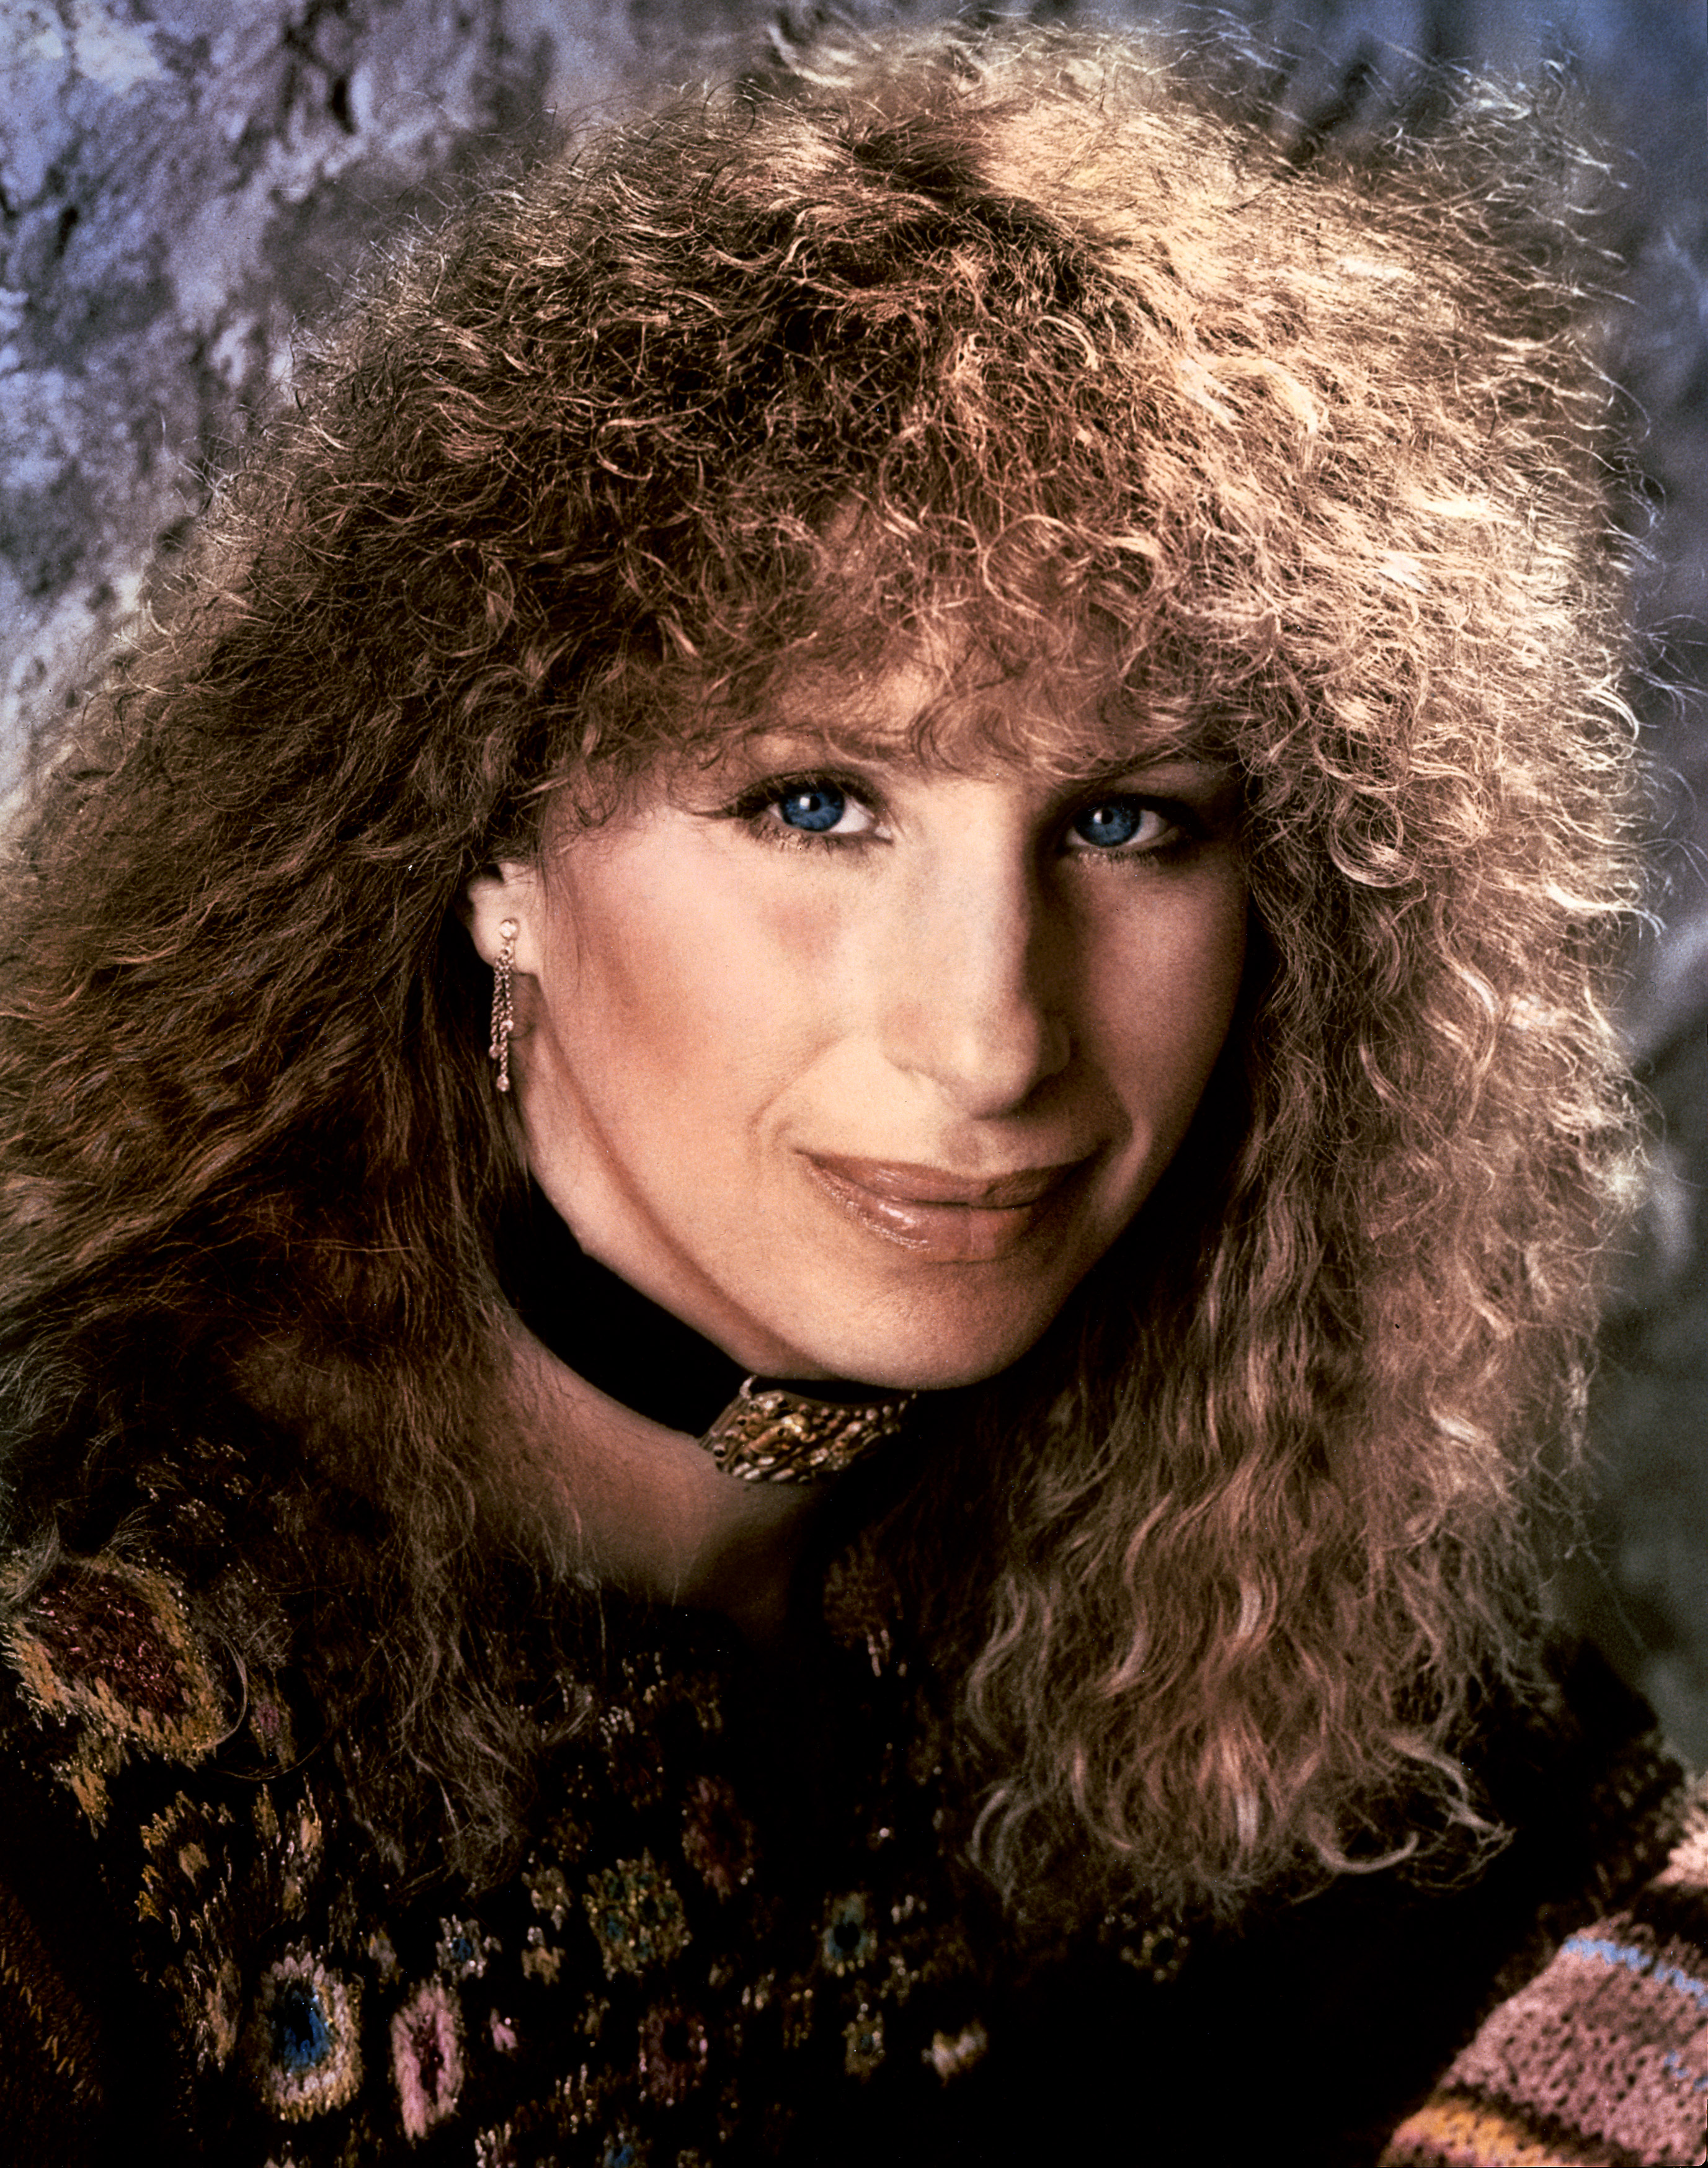 Barbra Streisand apparaît dans l'émission "20/20" en 1982. | Source : Getty Images